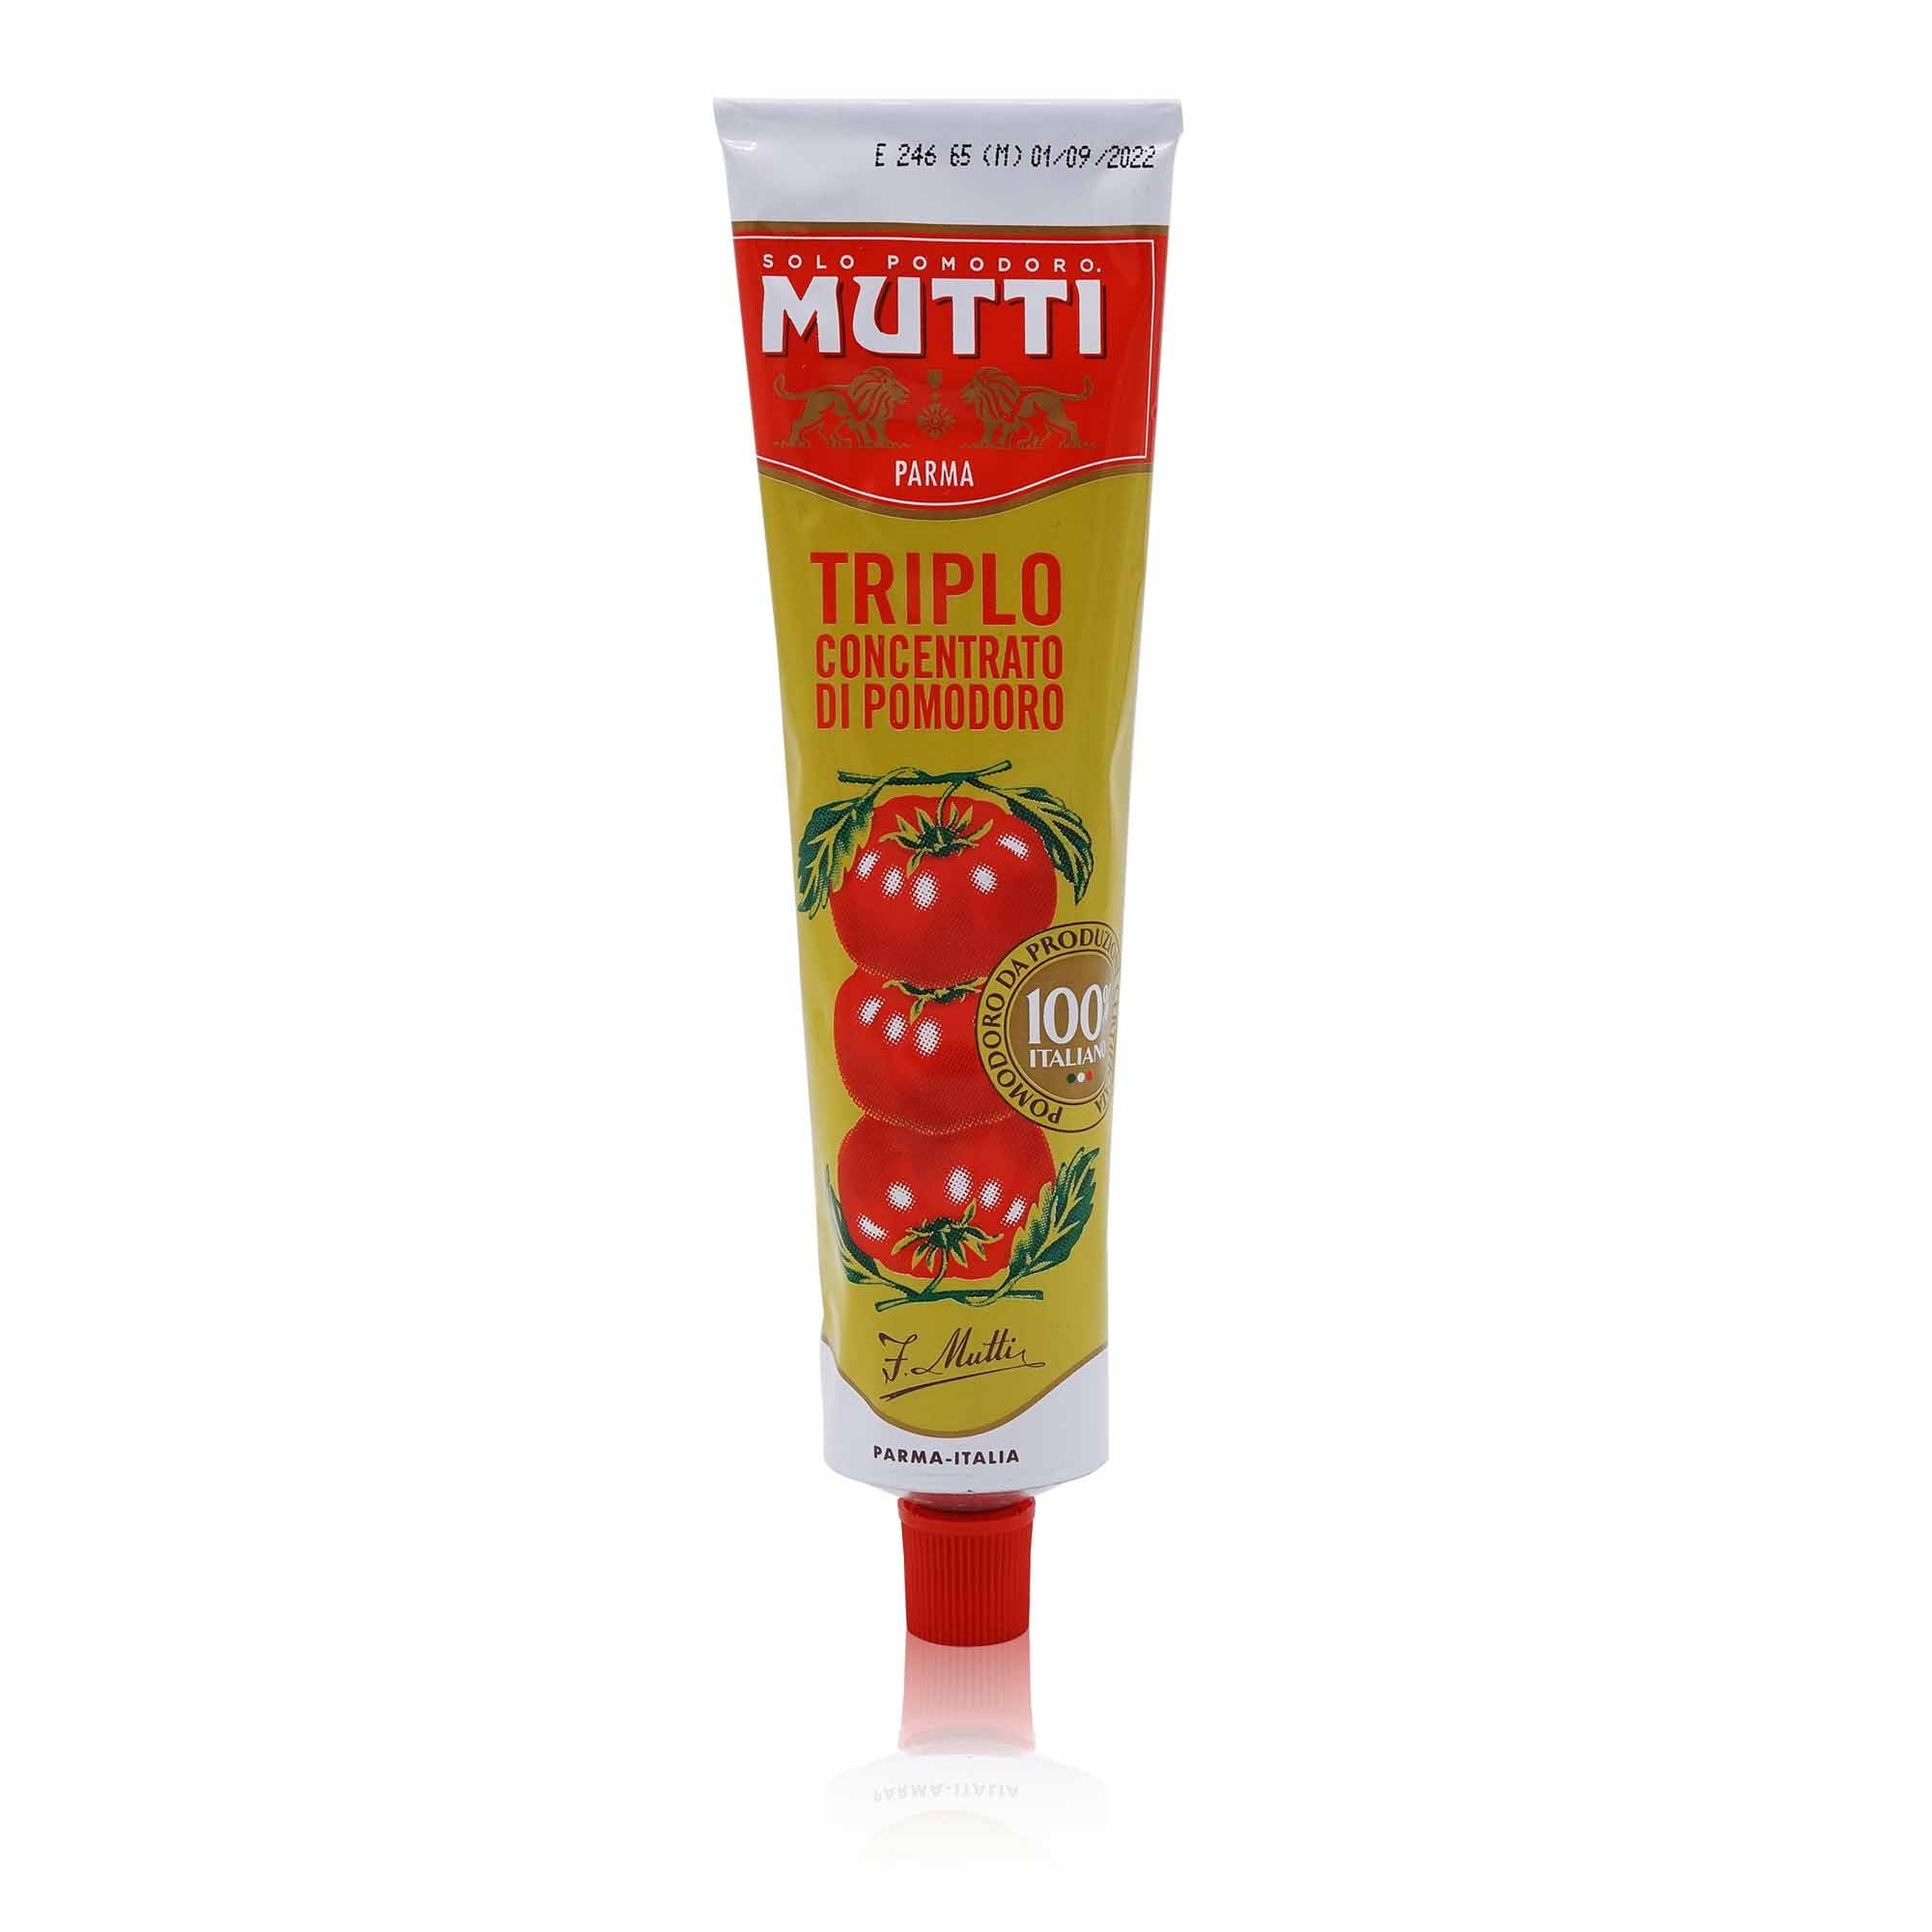 MUTTI Triplo Concentrato – Tomatenmark 3-fach konzentriert - 0,185kg - italienisch-einkaufen.de